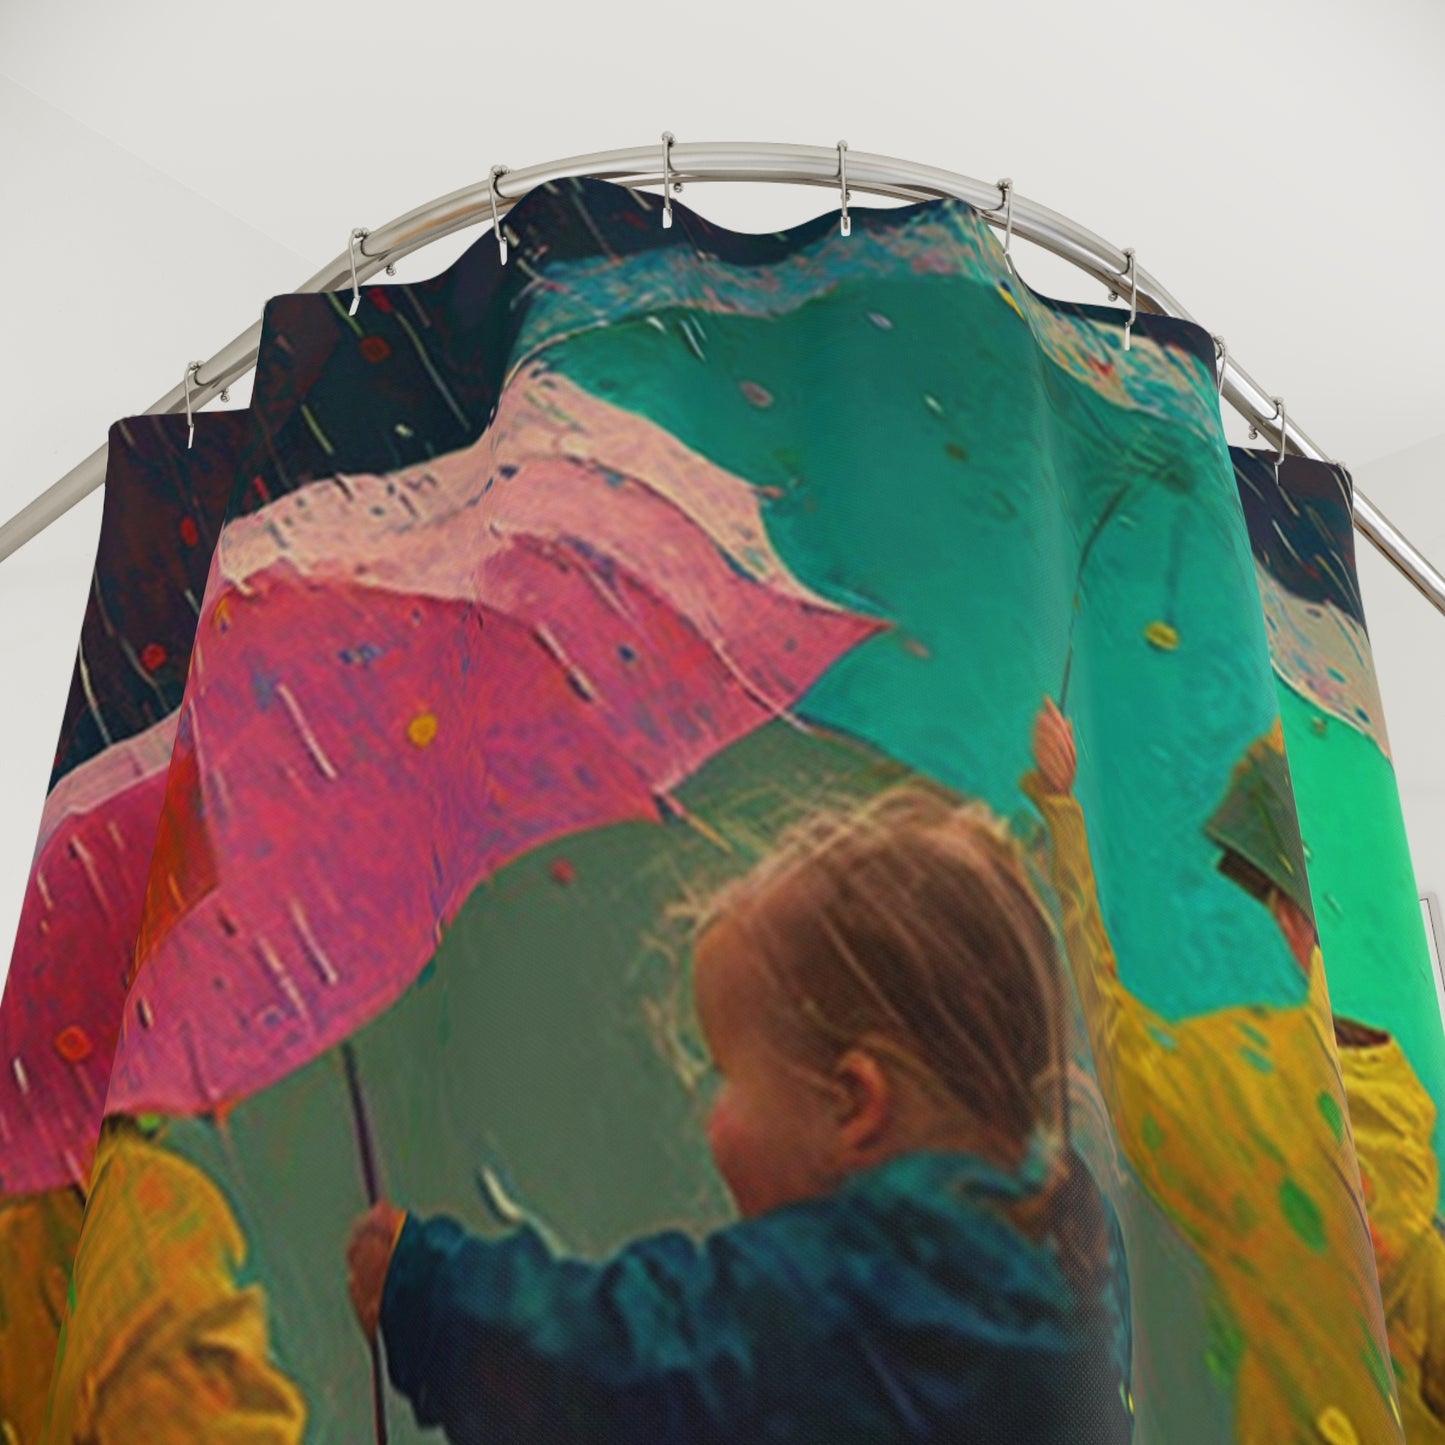 Polyester Shower Curtain kids dancing rain 3